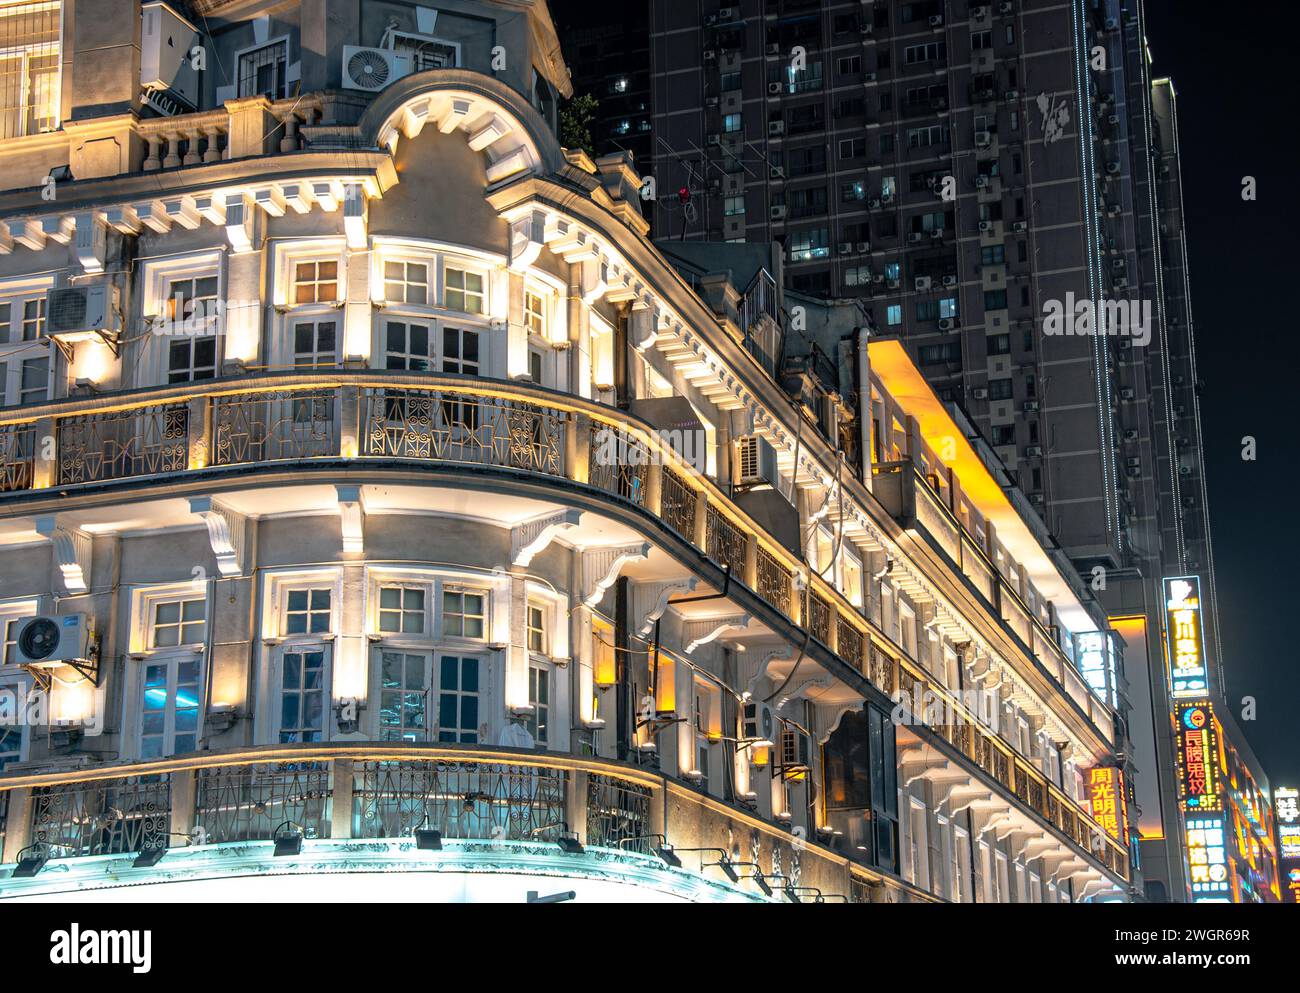 Un paesaggio urbano notturno con finestre illuminate e un edificio prominente sullo sfondo, che proietta riflessi accattivanti Foto Stock